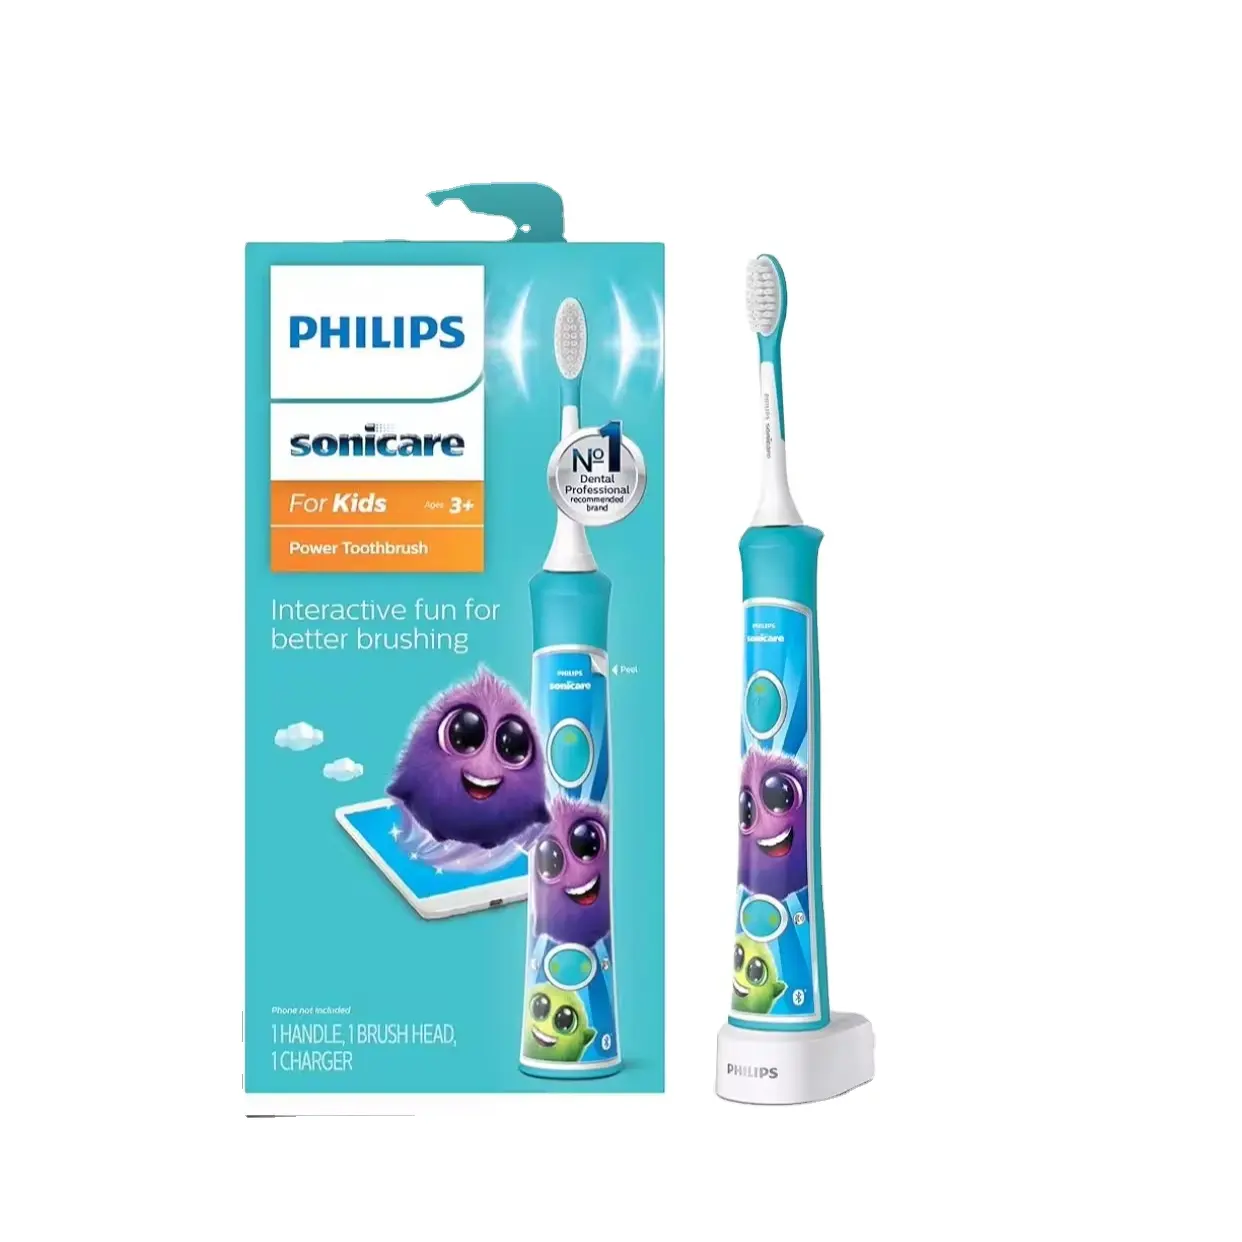 Çocuklar için Philips Sonicare 3 + Bluetooth bağlı şarj edilebilir elektrikli güç diş fırçası, daha iyi fırçalama için interaktif